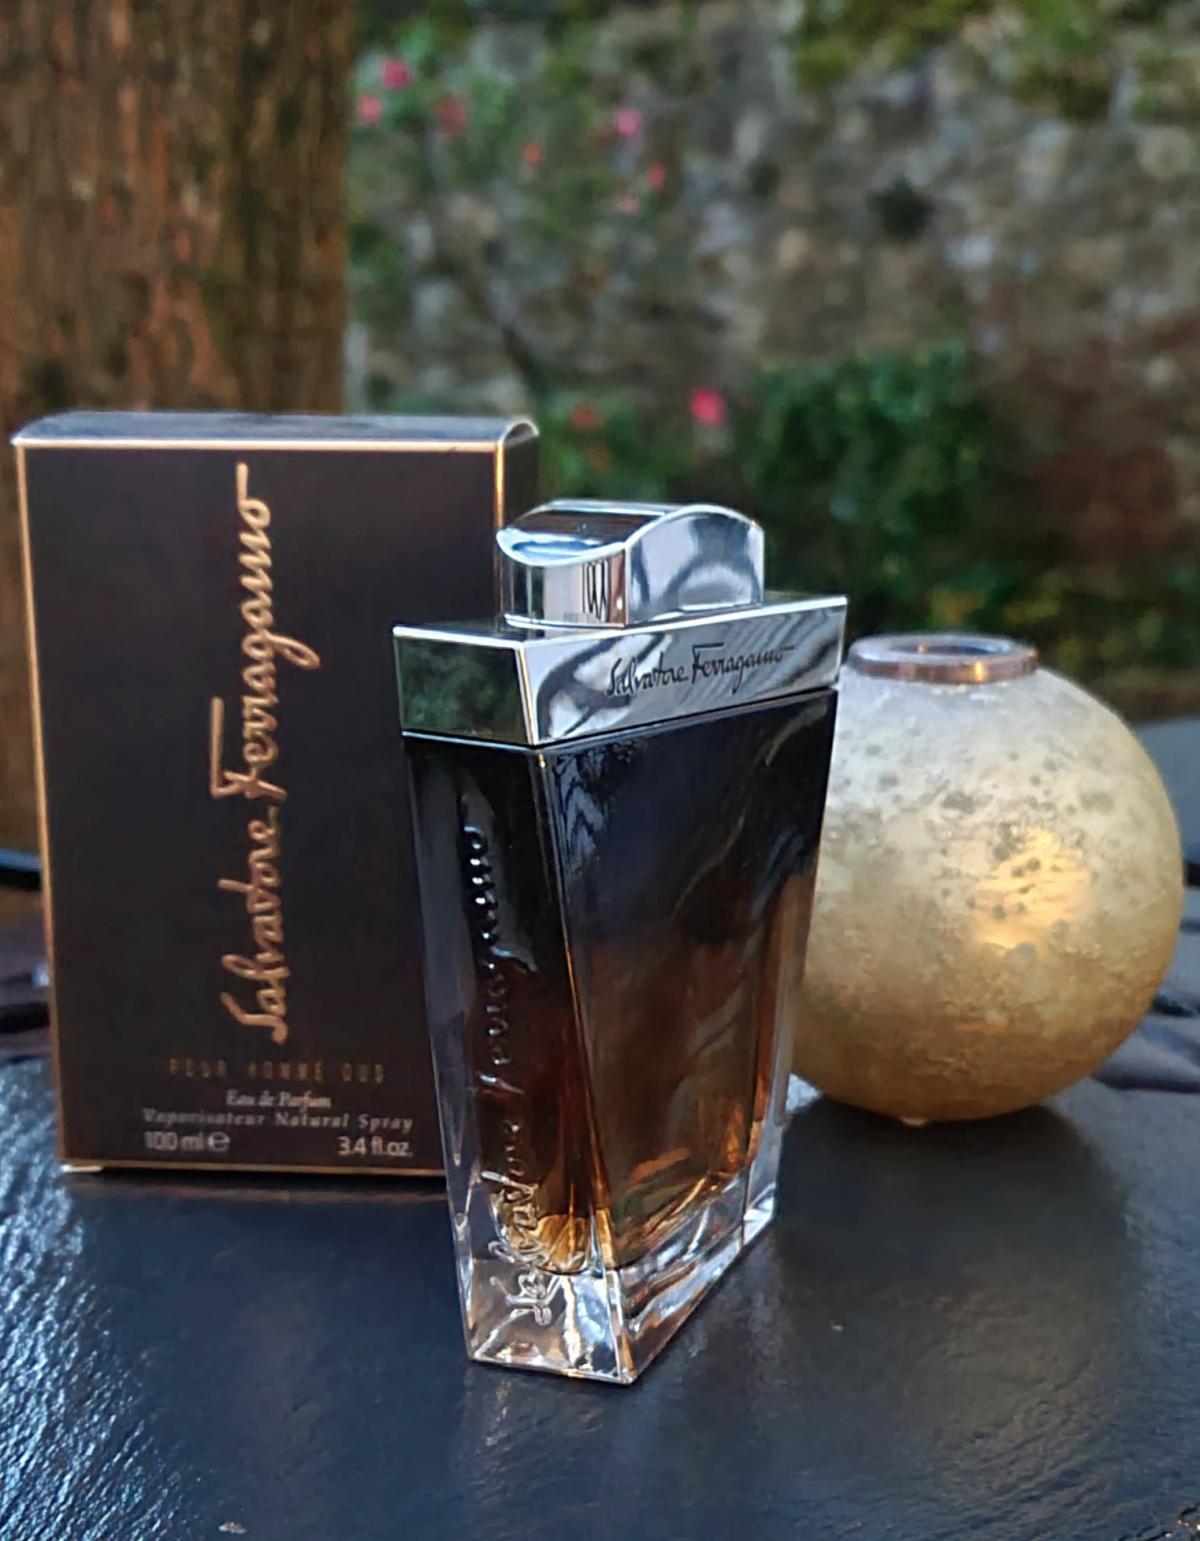 Ferragamo Oud Salvatore Ferragamo zapach - to perfumy dla mężczyzn